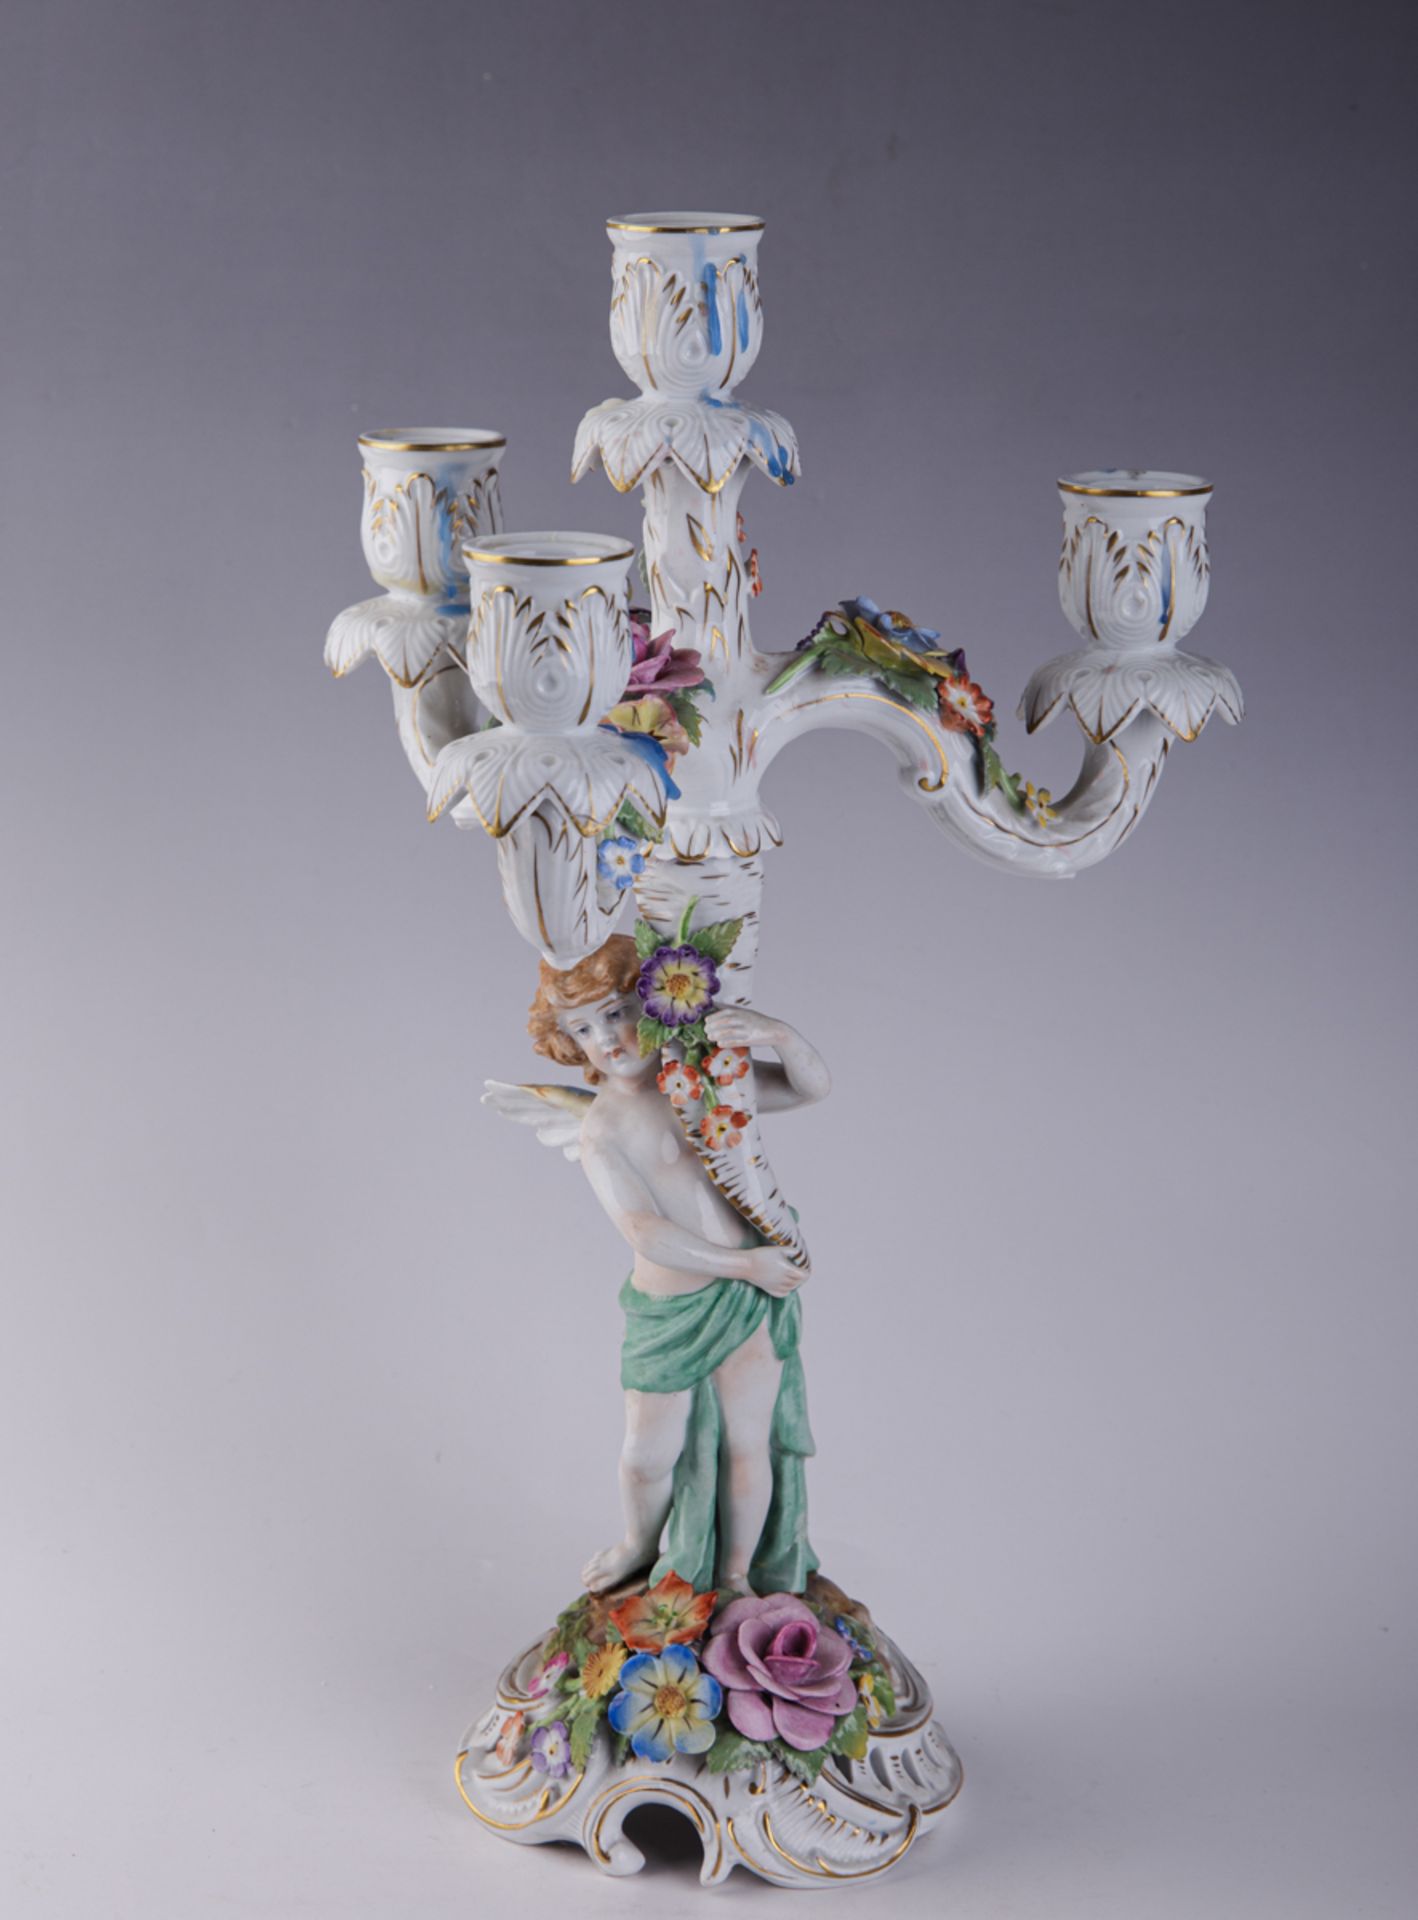 Schierholz'sche Porzellanmanufaktur Plaue, Leuchter mit Amoretto